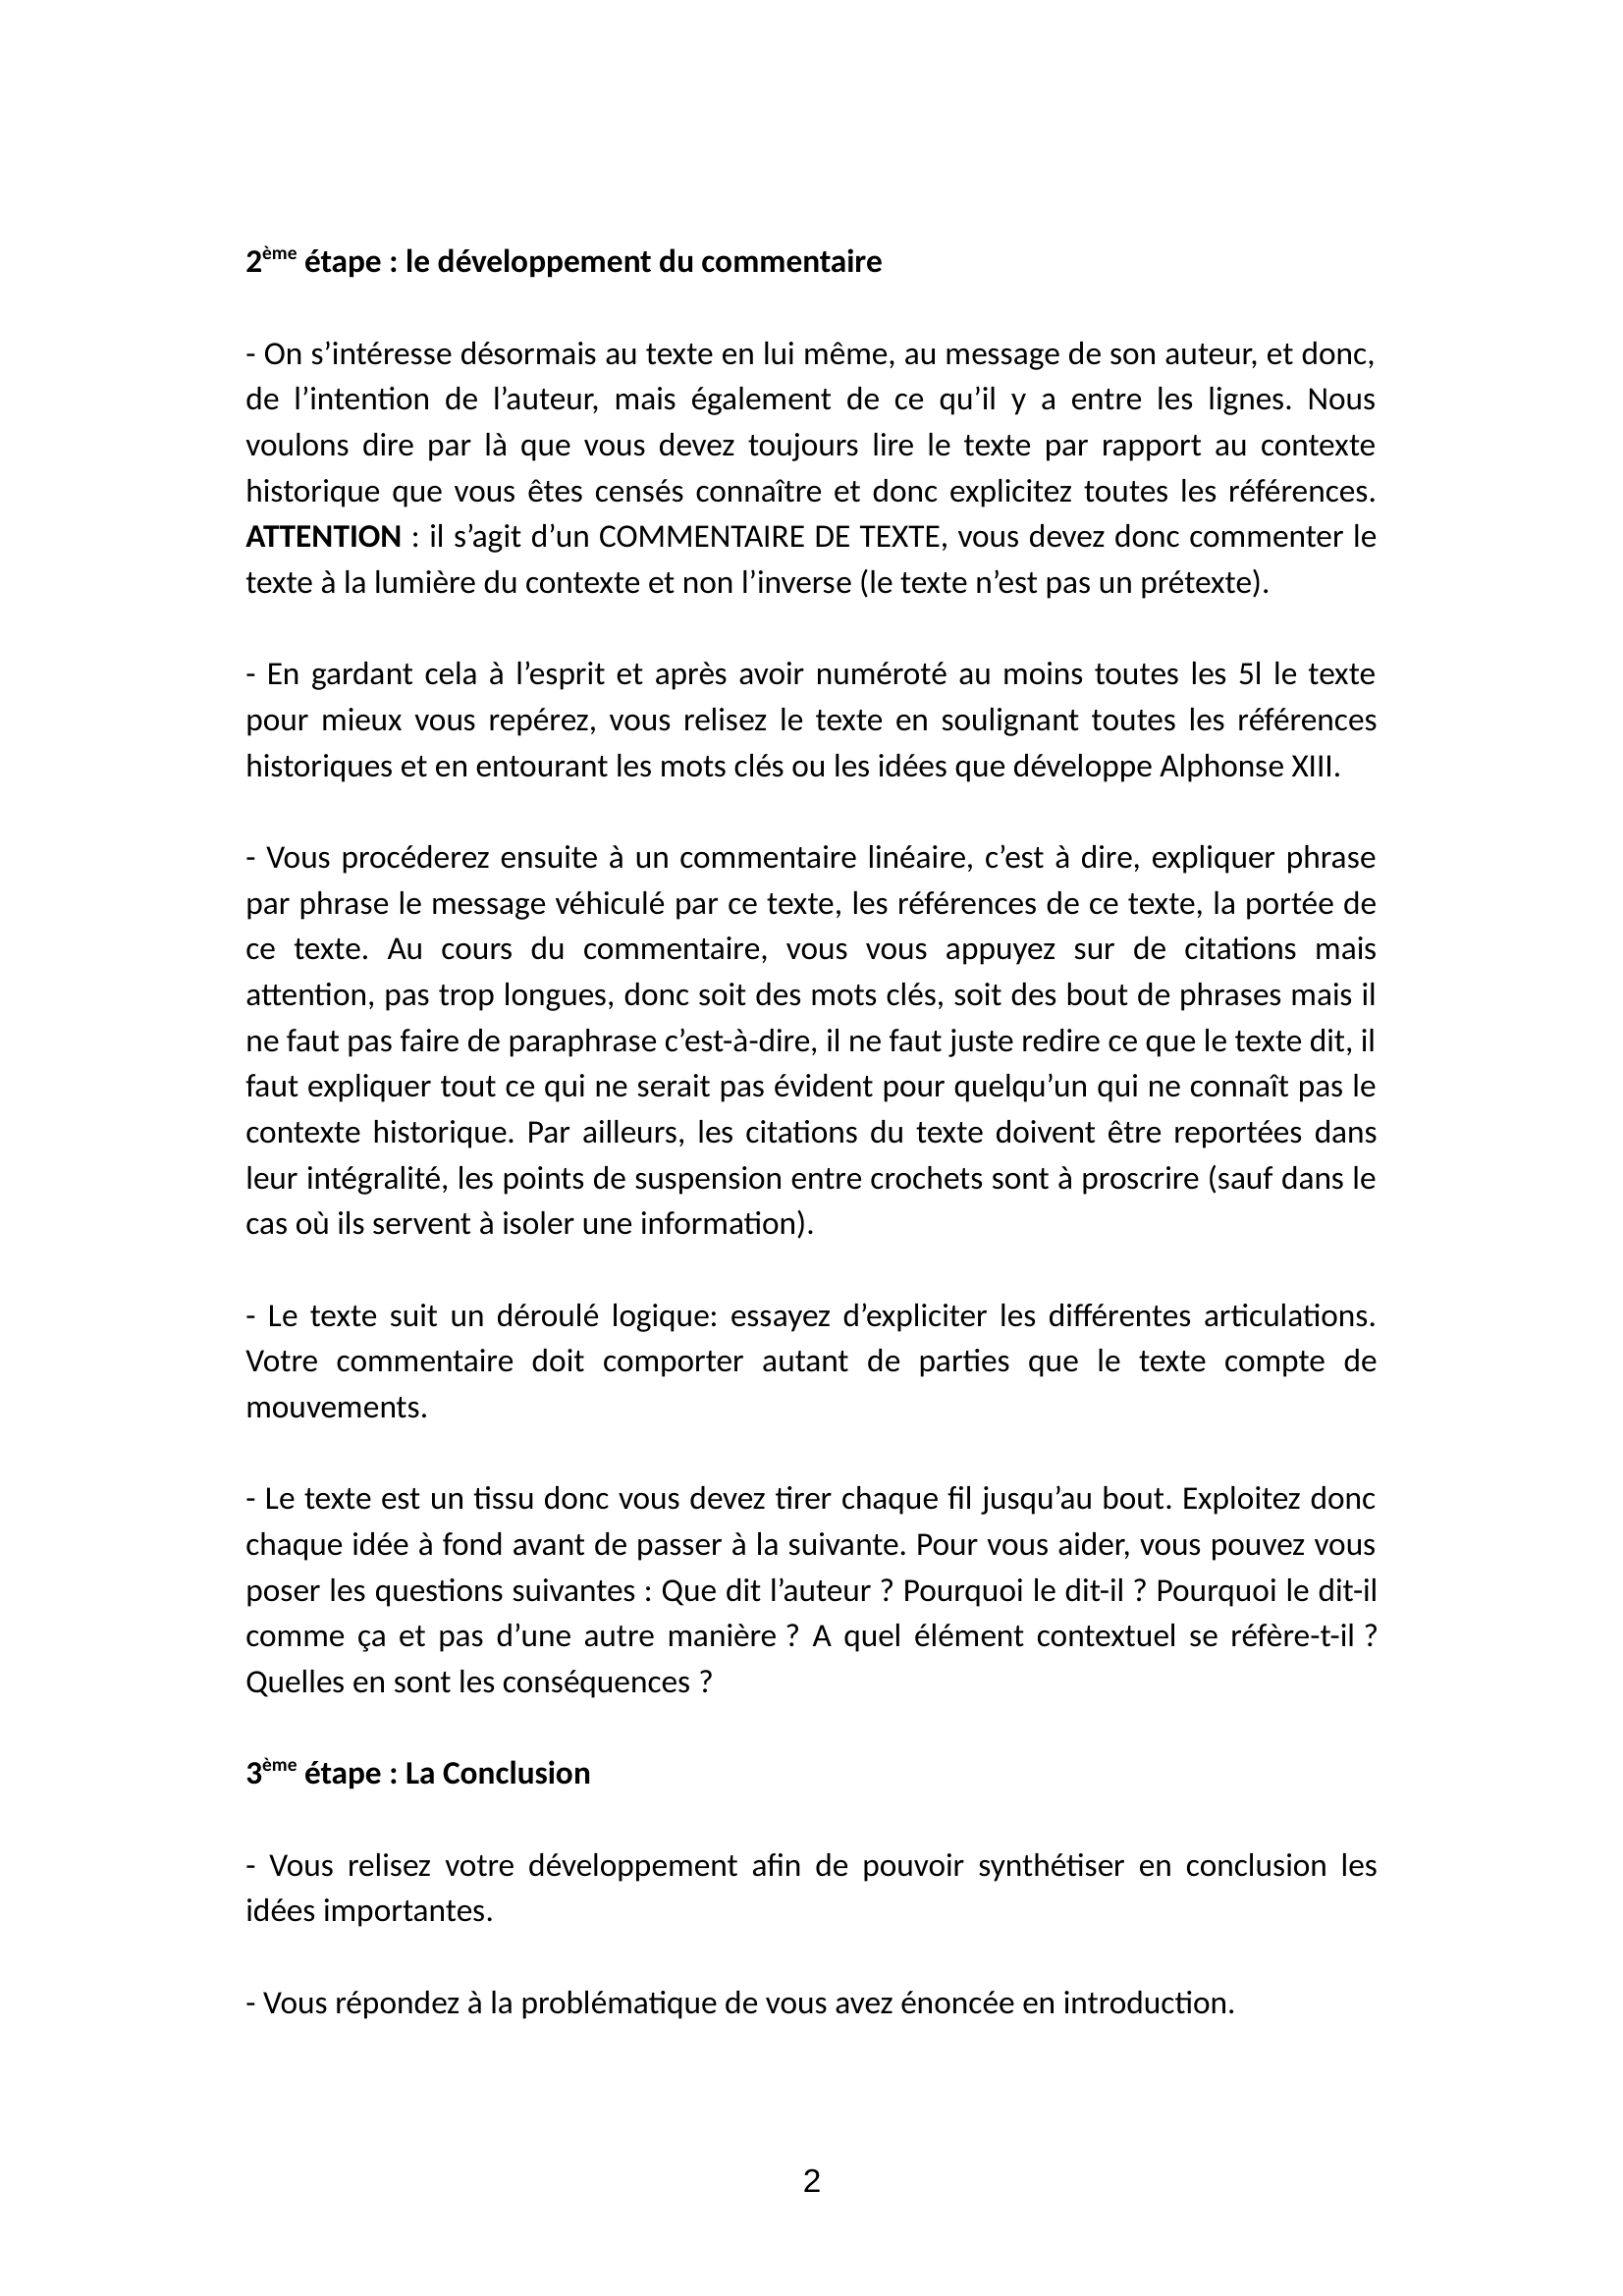 Prévisualisation du document commentaire du texte alfonso XIII